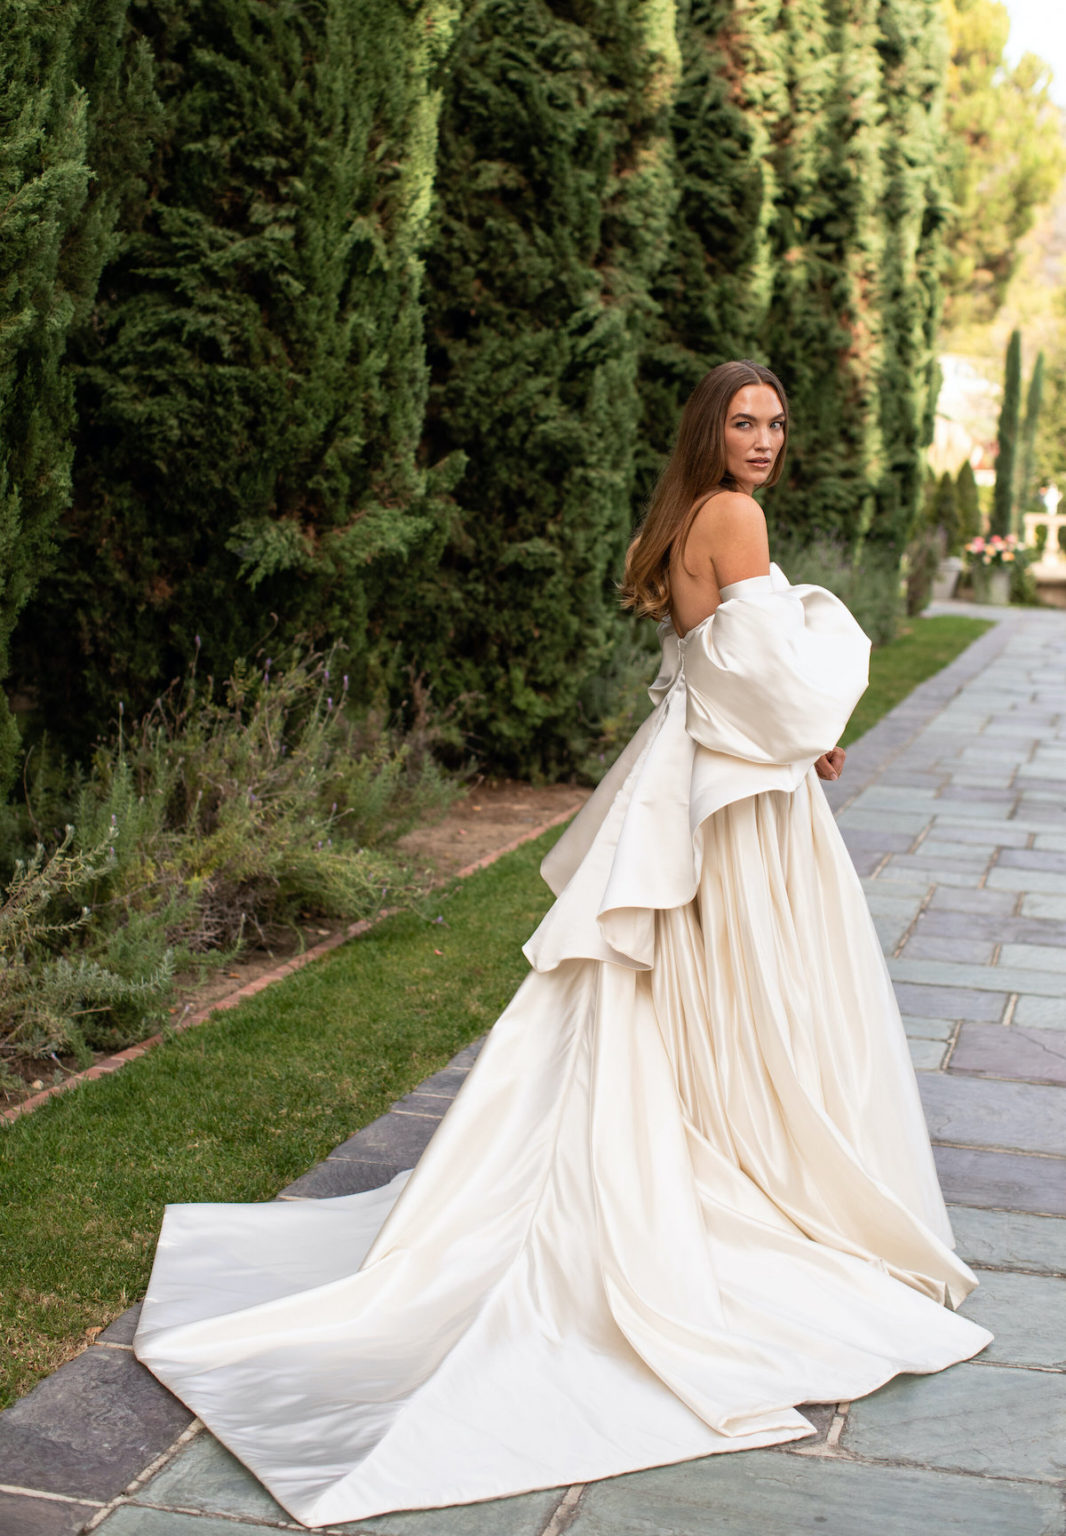 Beverly Hills Greystone Mansion Alfresco Garden Wedding – Luxe Linen